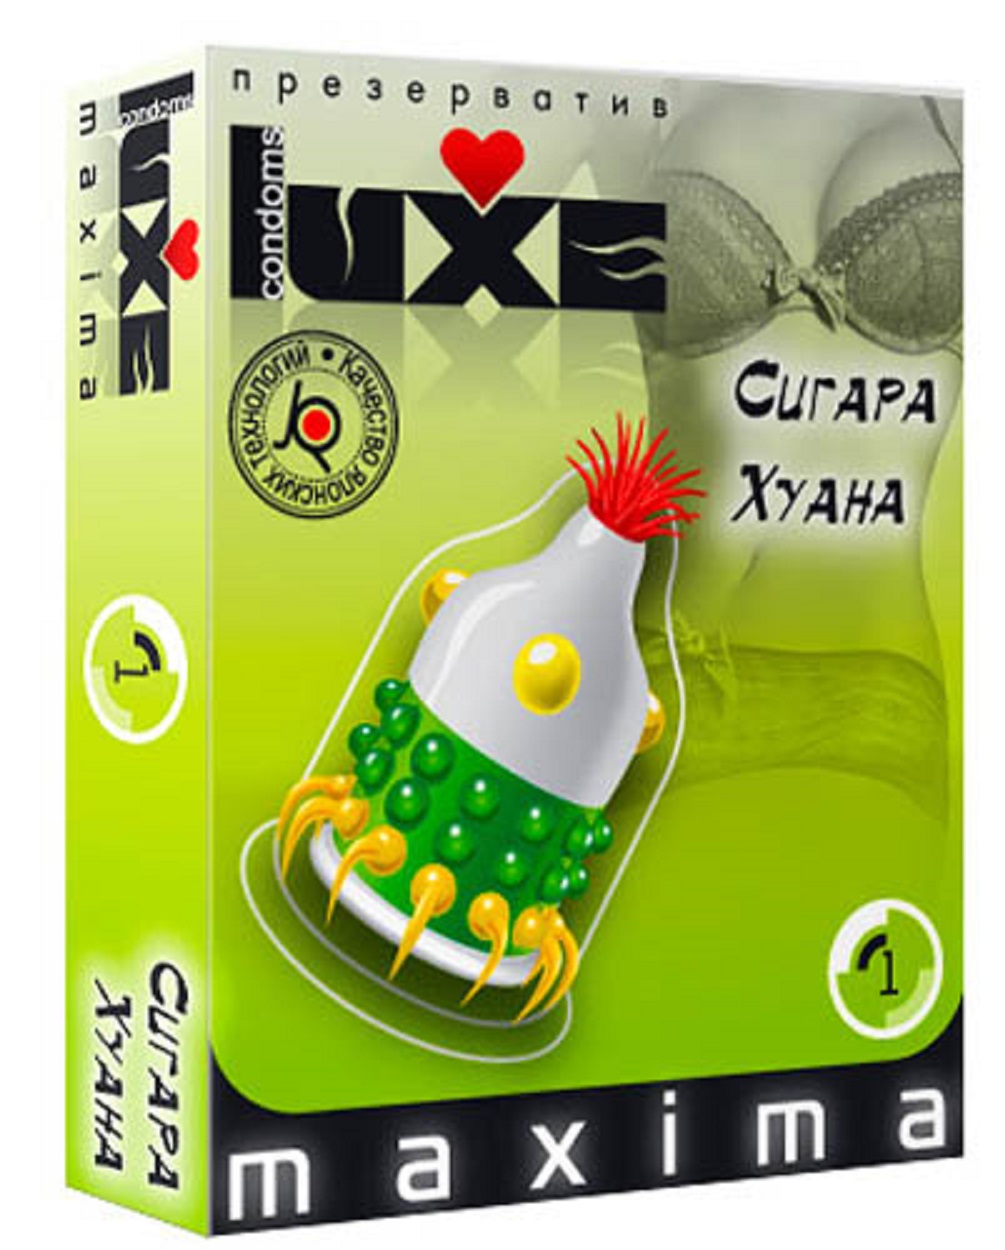 Презерватив Luxe Сигара Хуана 1 шт